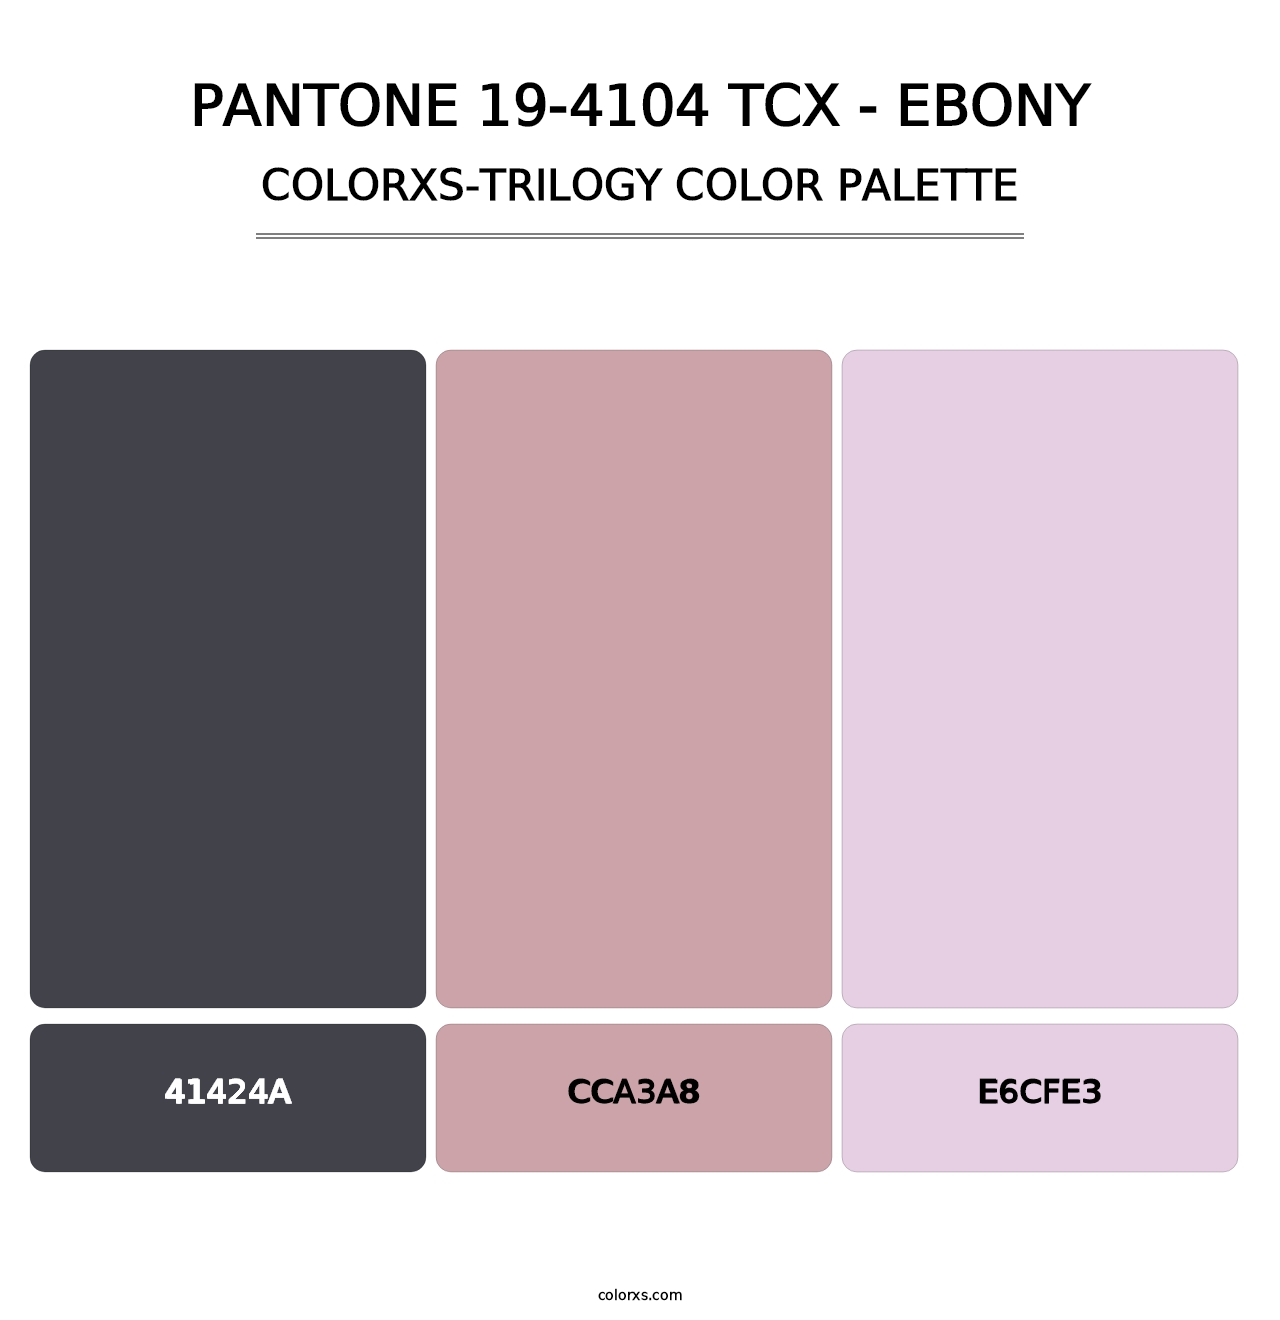 PANTONE 19-4104 TCX - Ebony - Colorxs Trilogy Palette